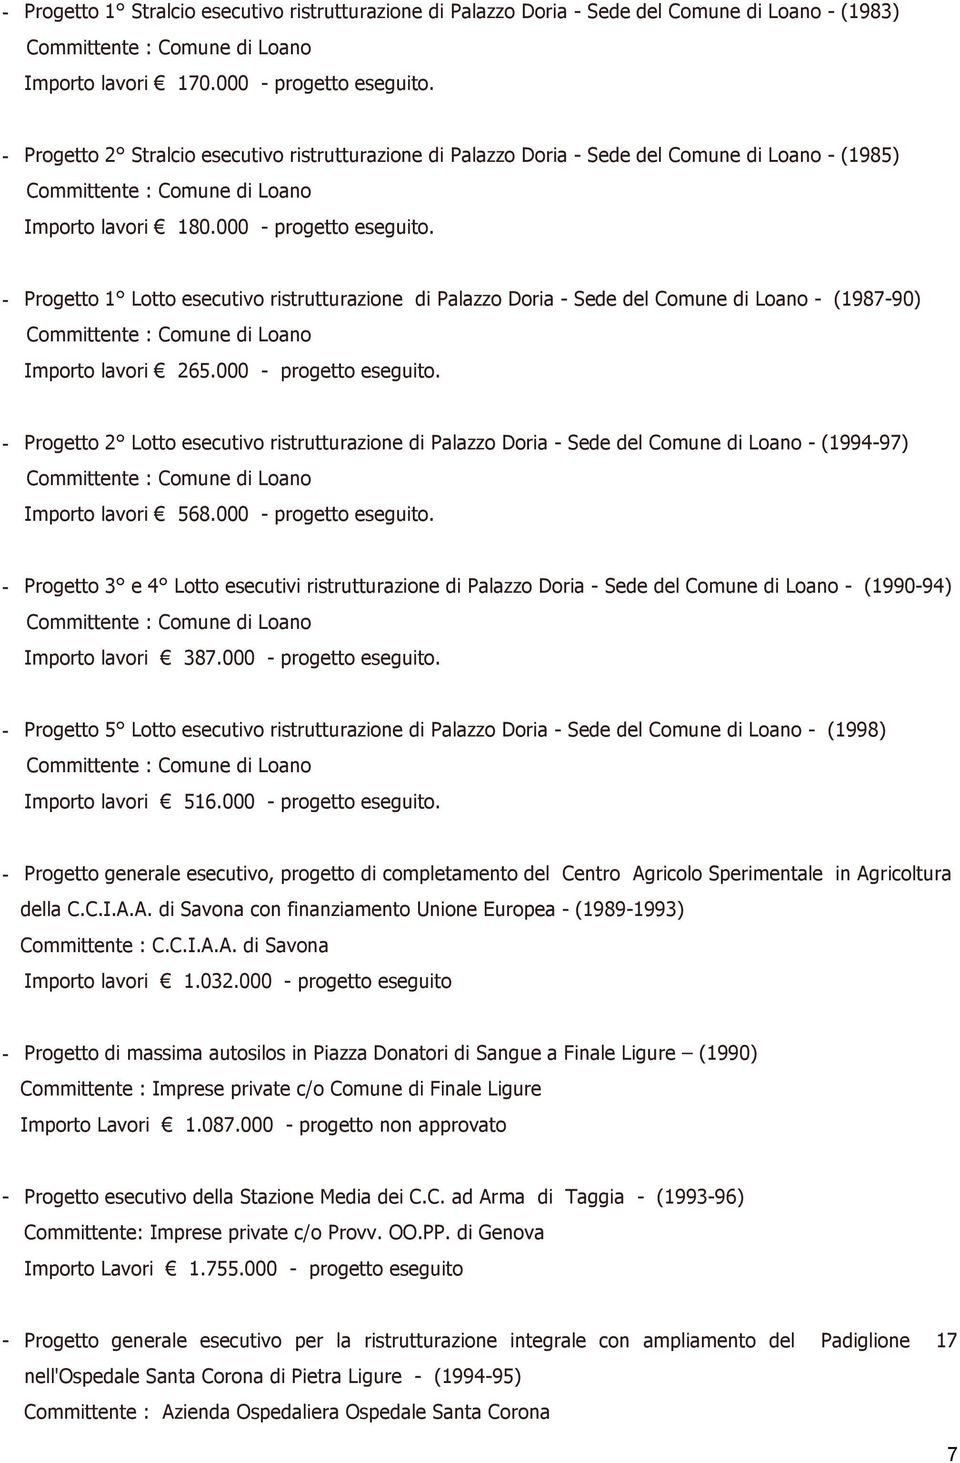 - Progetto 1 Lotto esecutivo ristrutturazione di Palazzo Doria - Sede del Comune di Loano - (1987-90) Importo lavori 265.000 -.